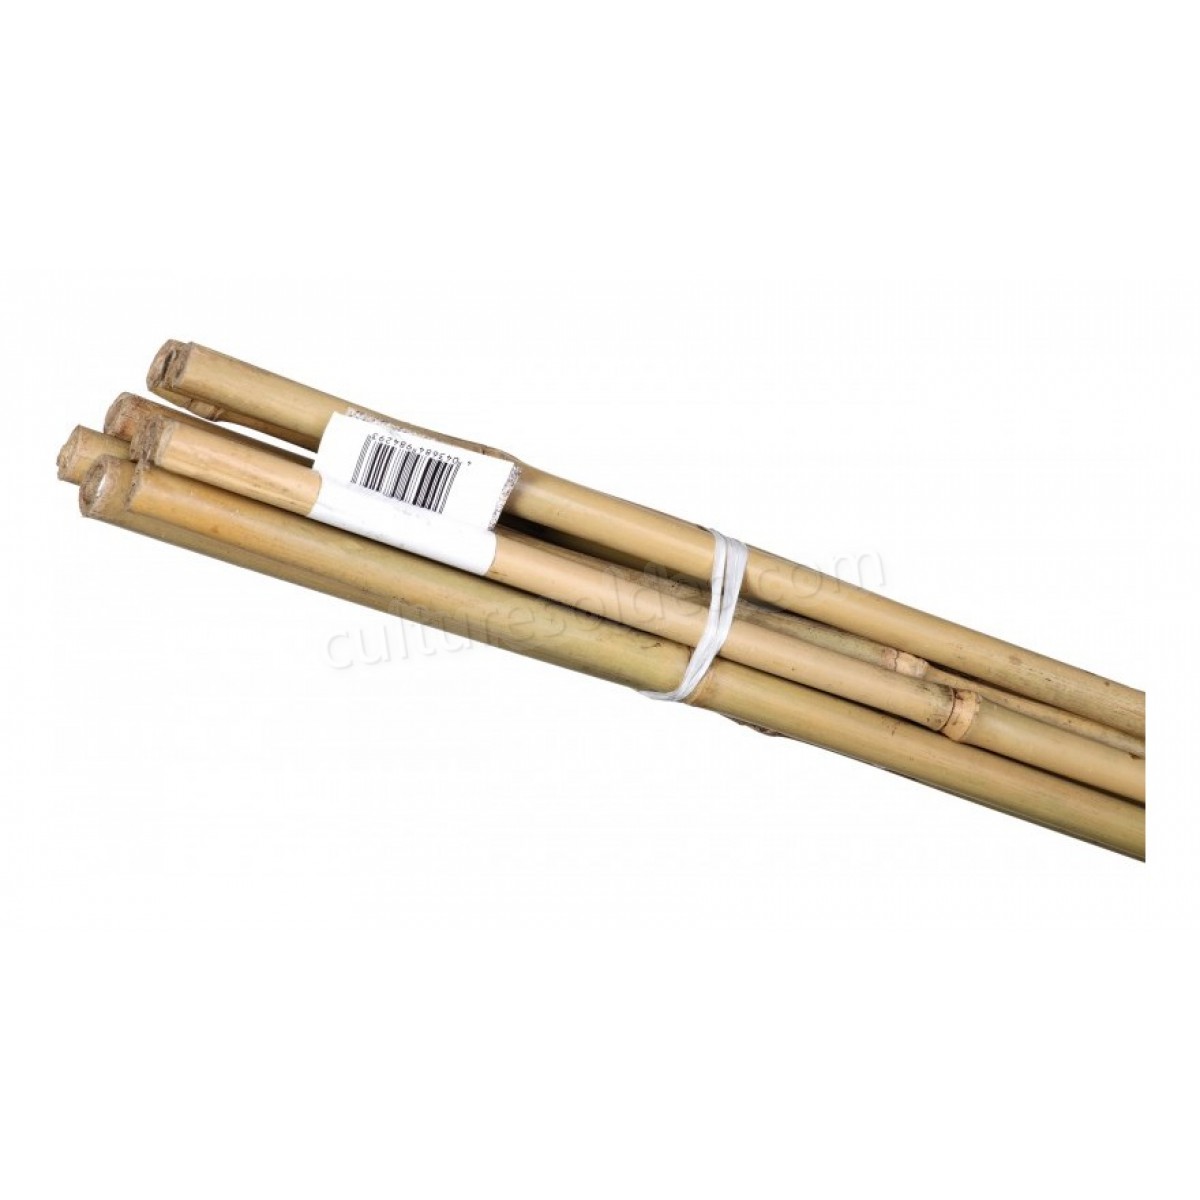 Baton de bambou 900x6-8 mm (10 pièces) soldes en ligne - Baton de bambou 900x6-8 mm (10 pièces) soldes en ligne